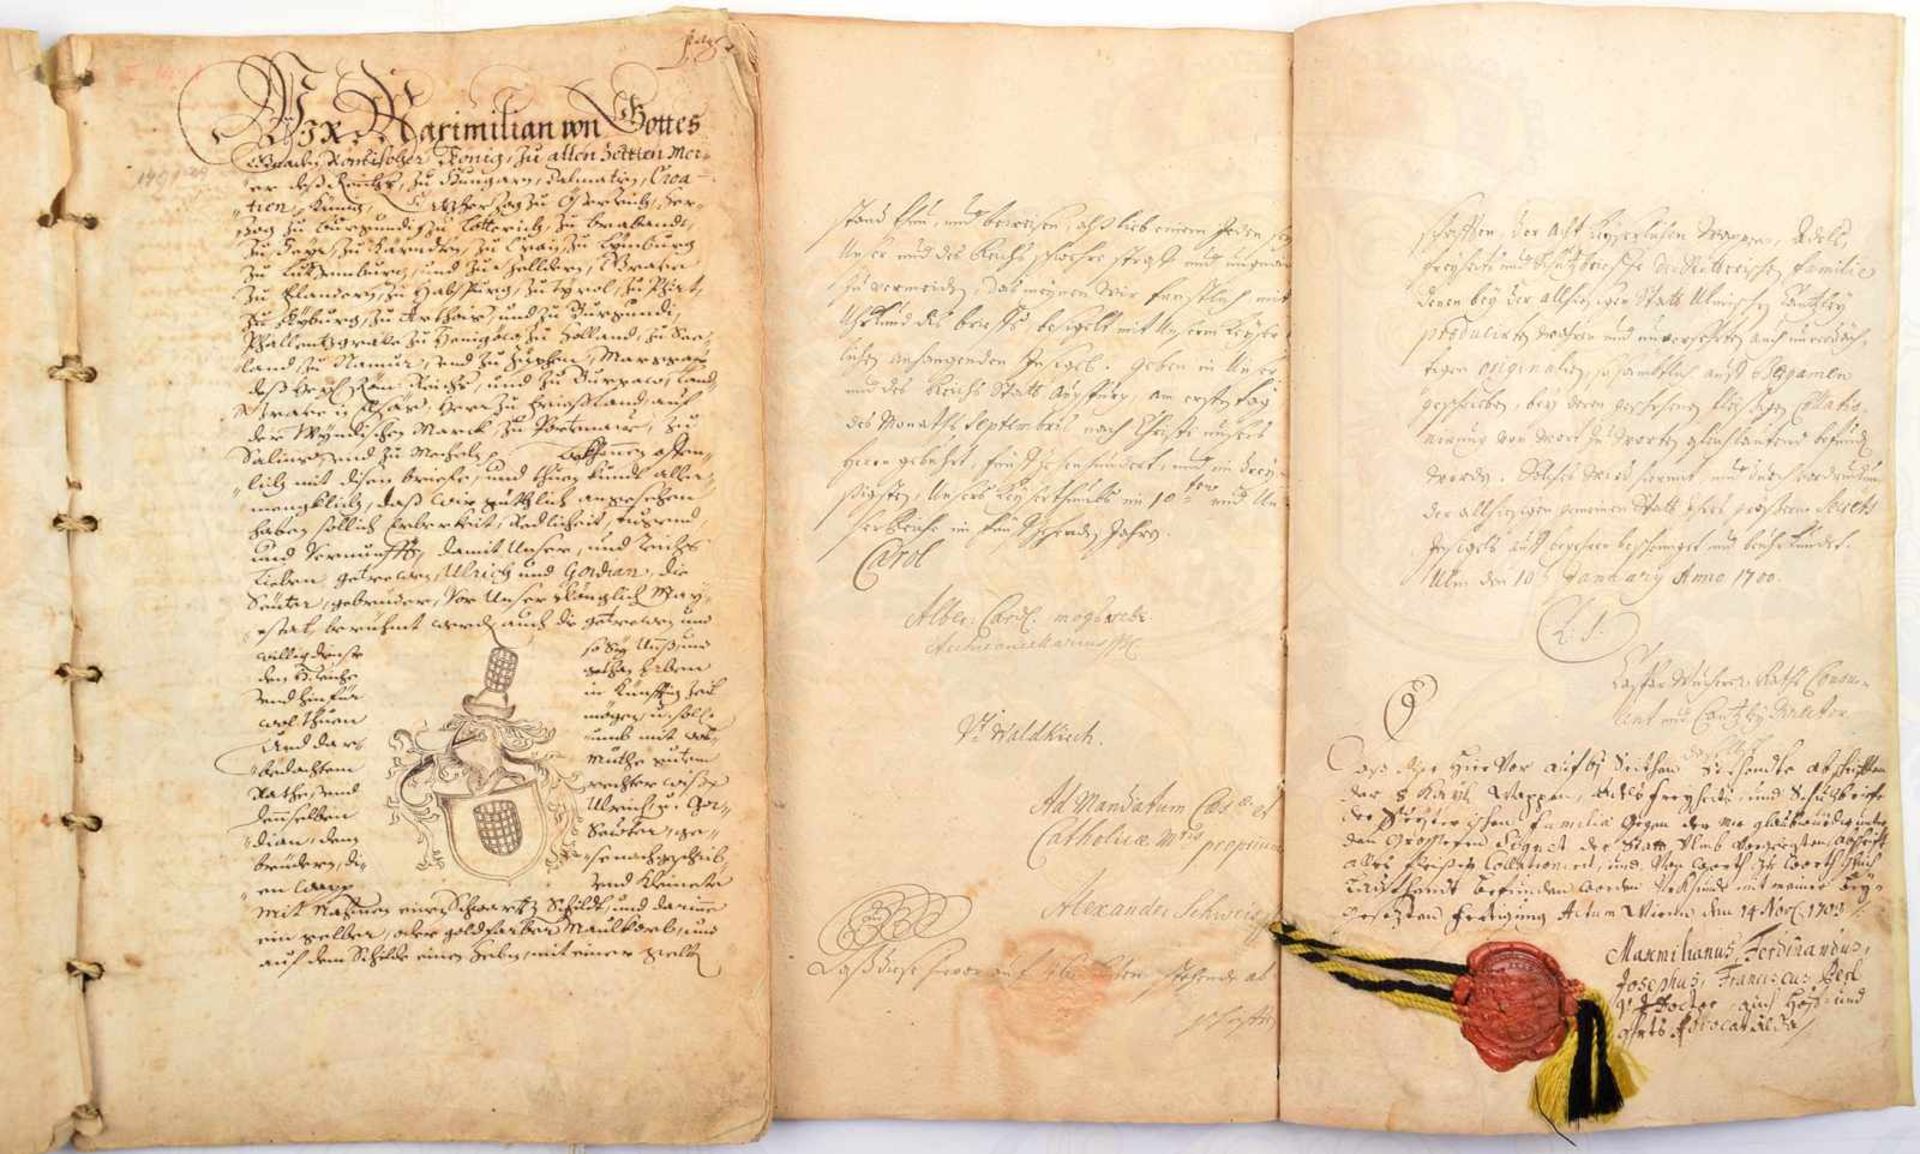 2 ADELSDIPLOME VON SEUTTER, 2 zeitgenössische beglaubigte Kanzlei-Abschriften 1700 u. Österreich - Bild 2 aus 2